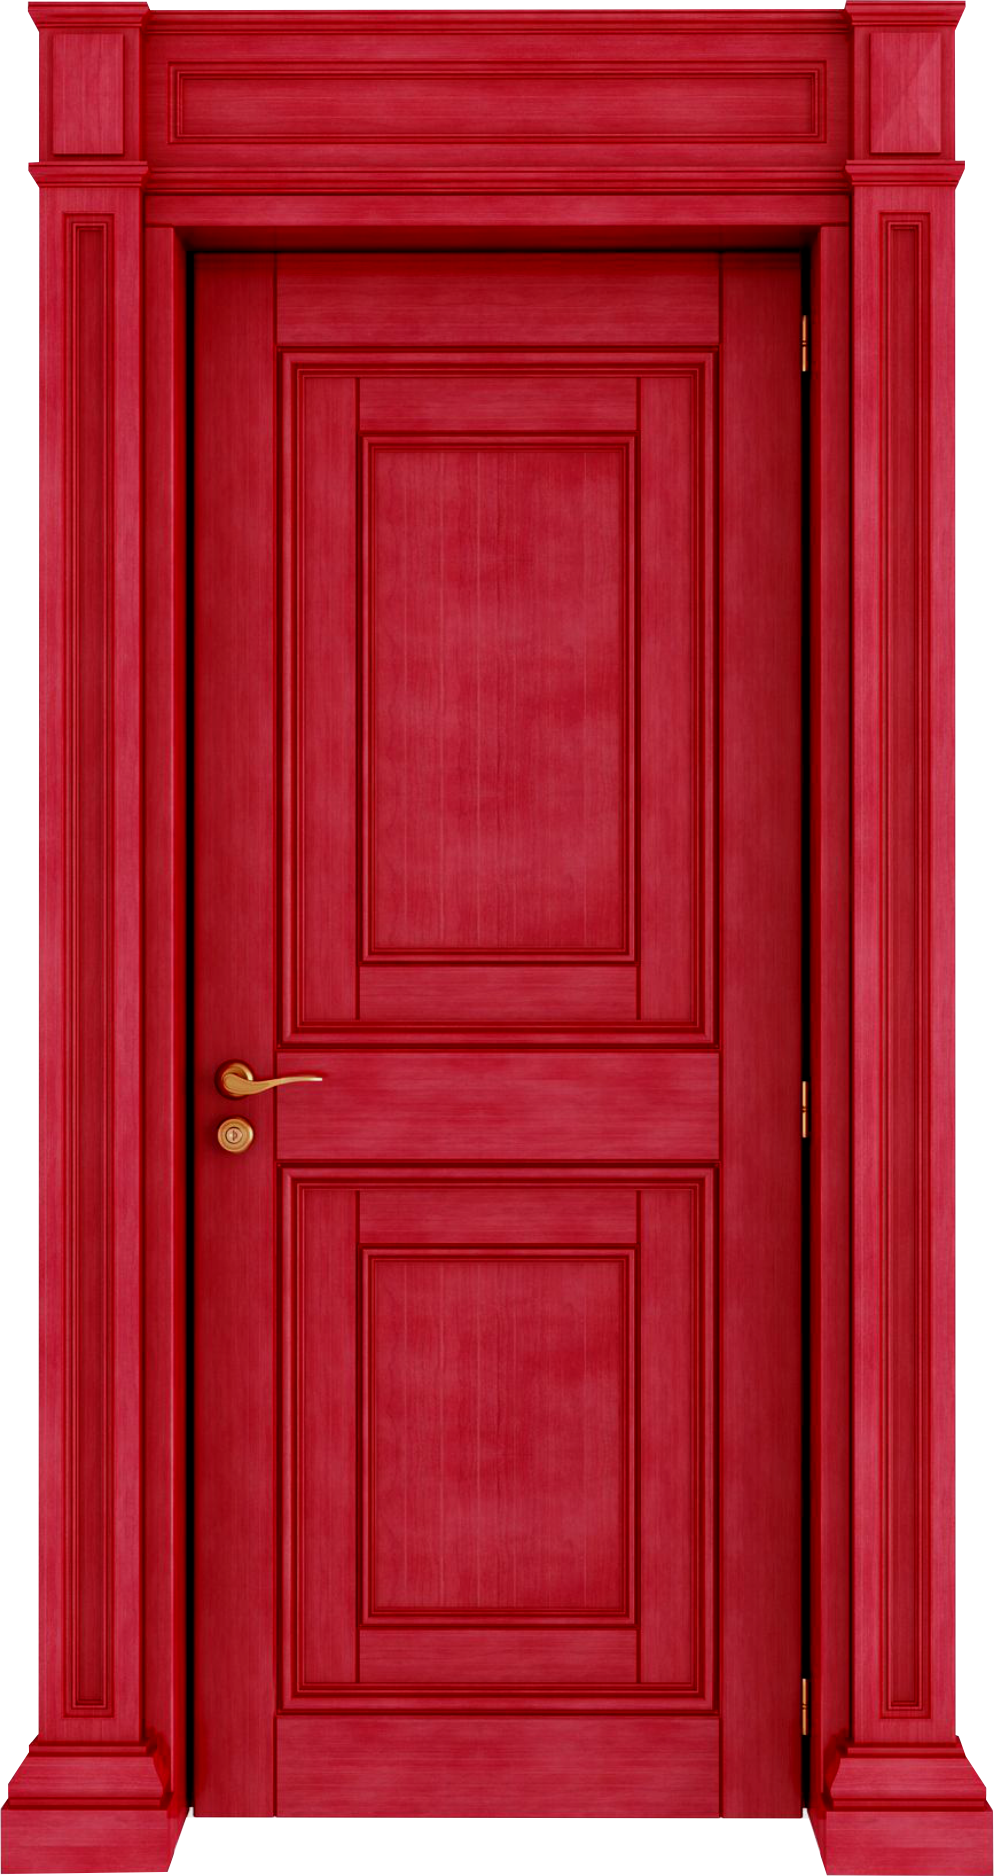 Door PNG Images, Open Door, Cartoon Door, Old Door Clipart Free Download -  Free Transparent PNG Logos